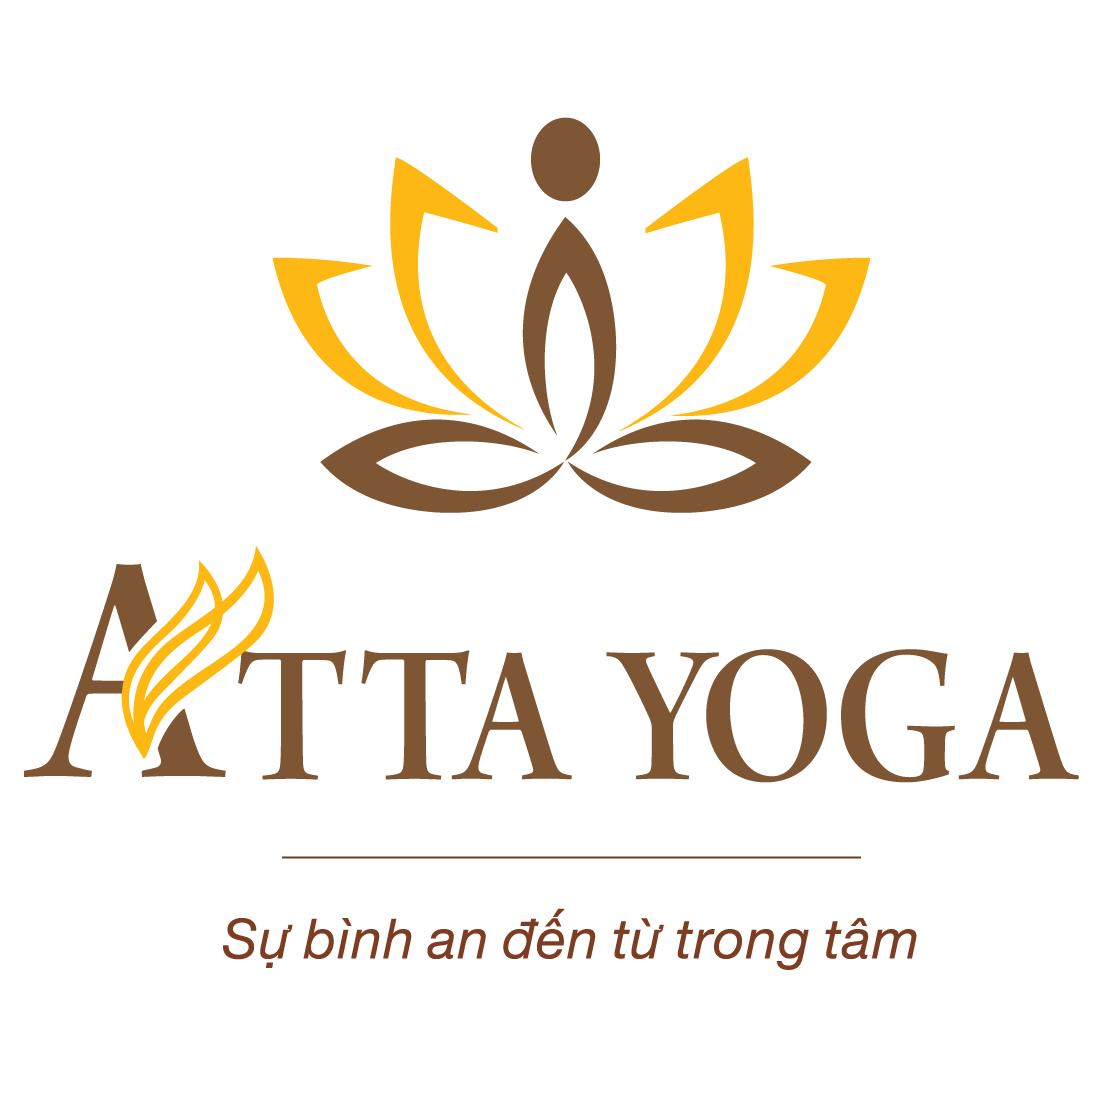 ATTA Yoga - Yoga trị liệu và thiền An Tự Tâm An